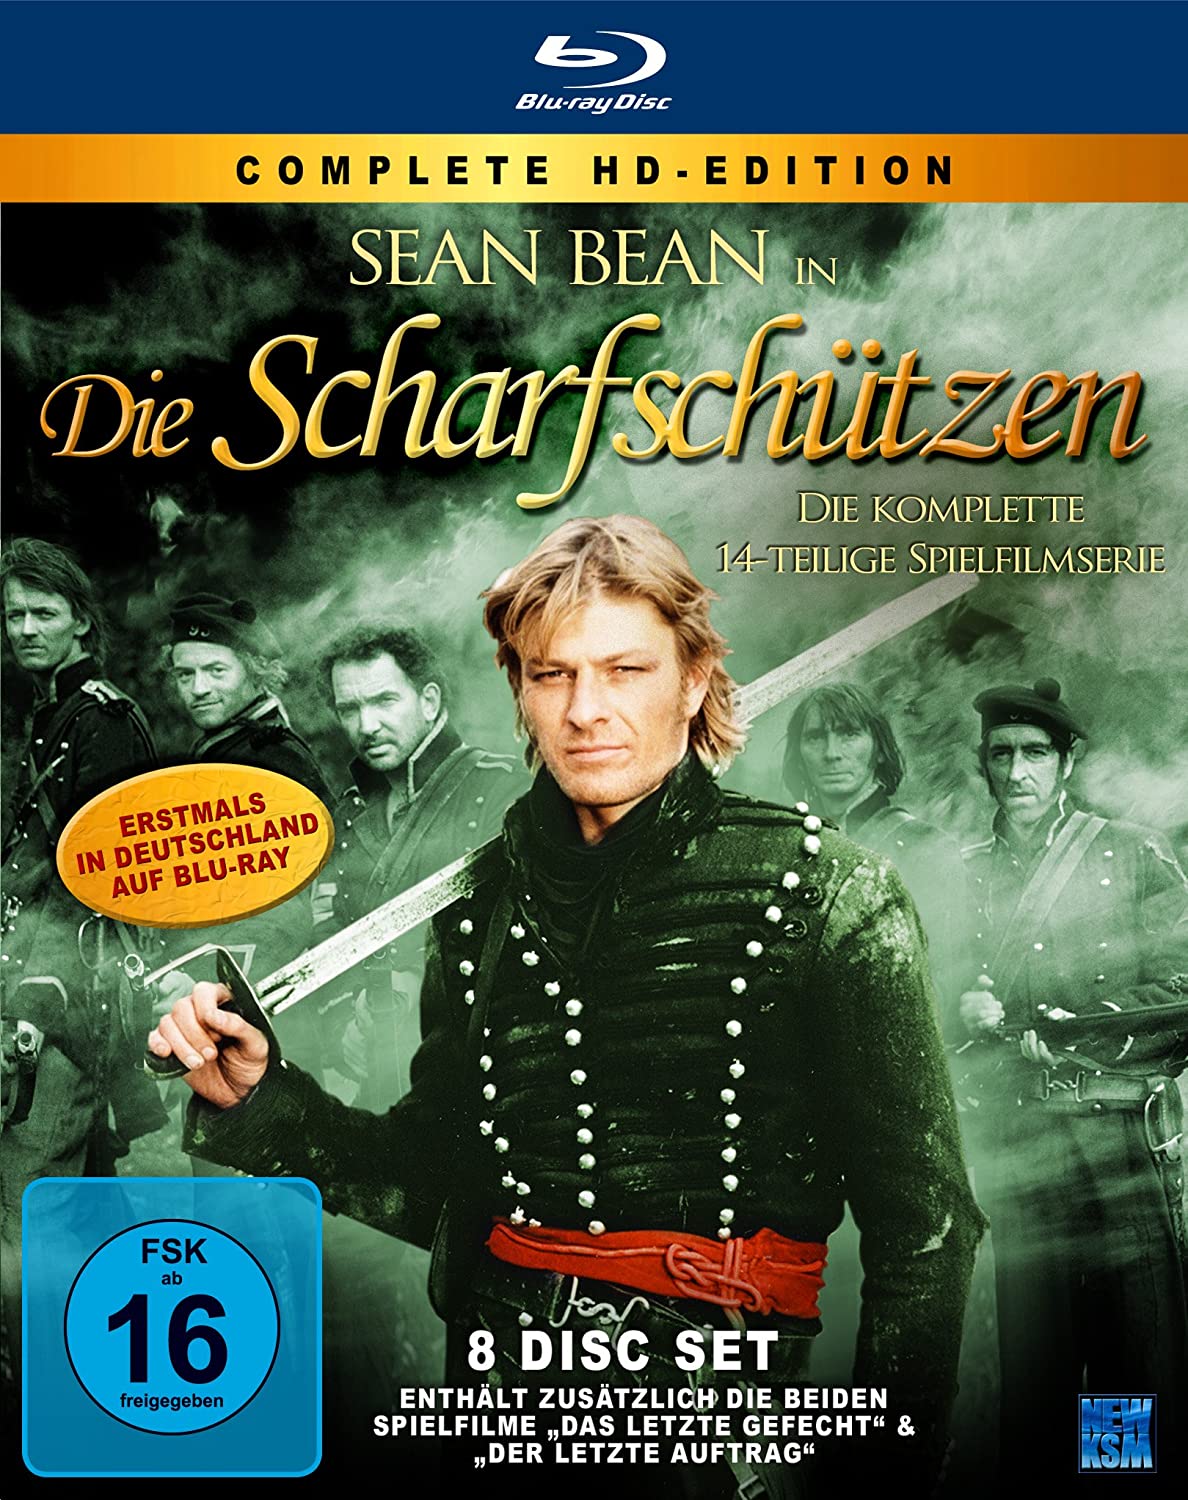 Die Scharfschützen: Complete HD-Edition 14-tlg. Spielfilmserie